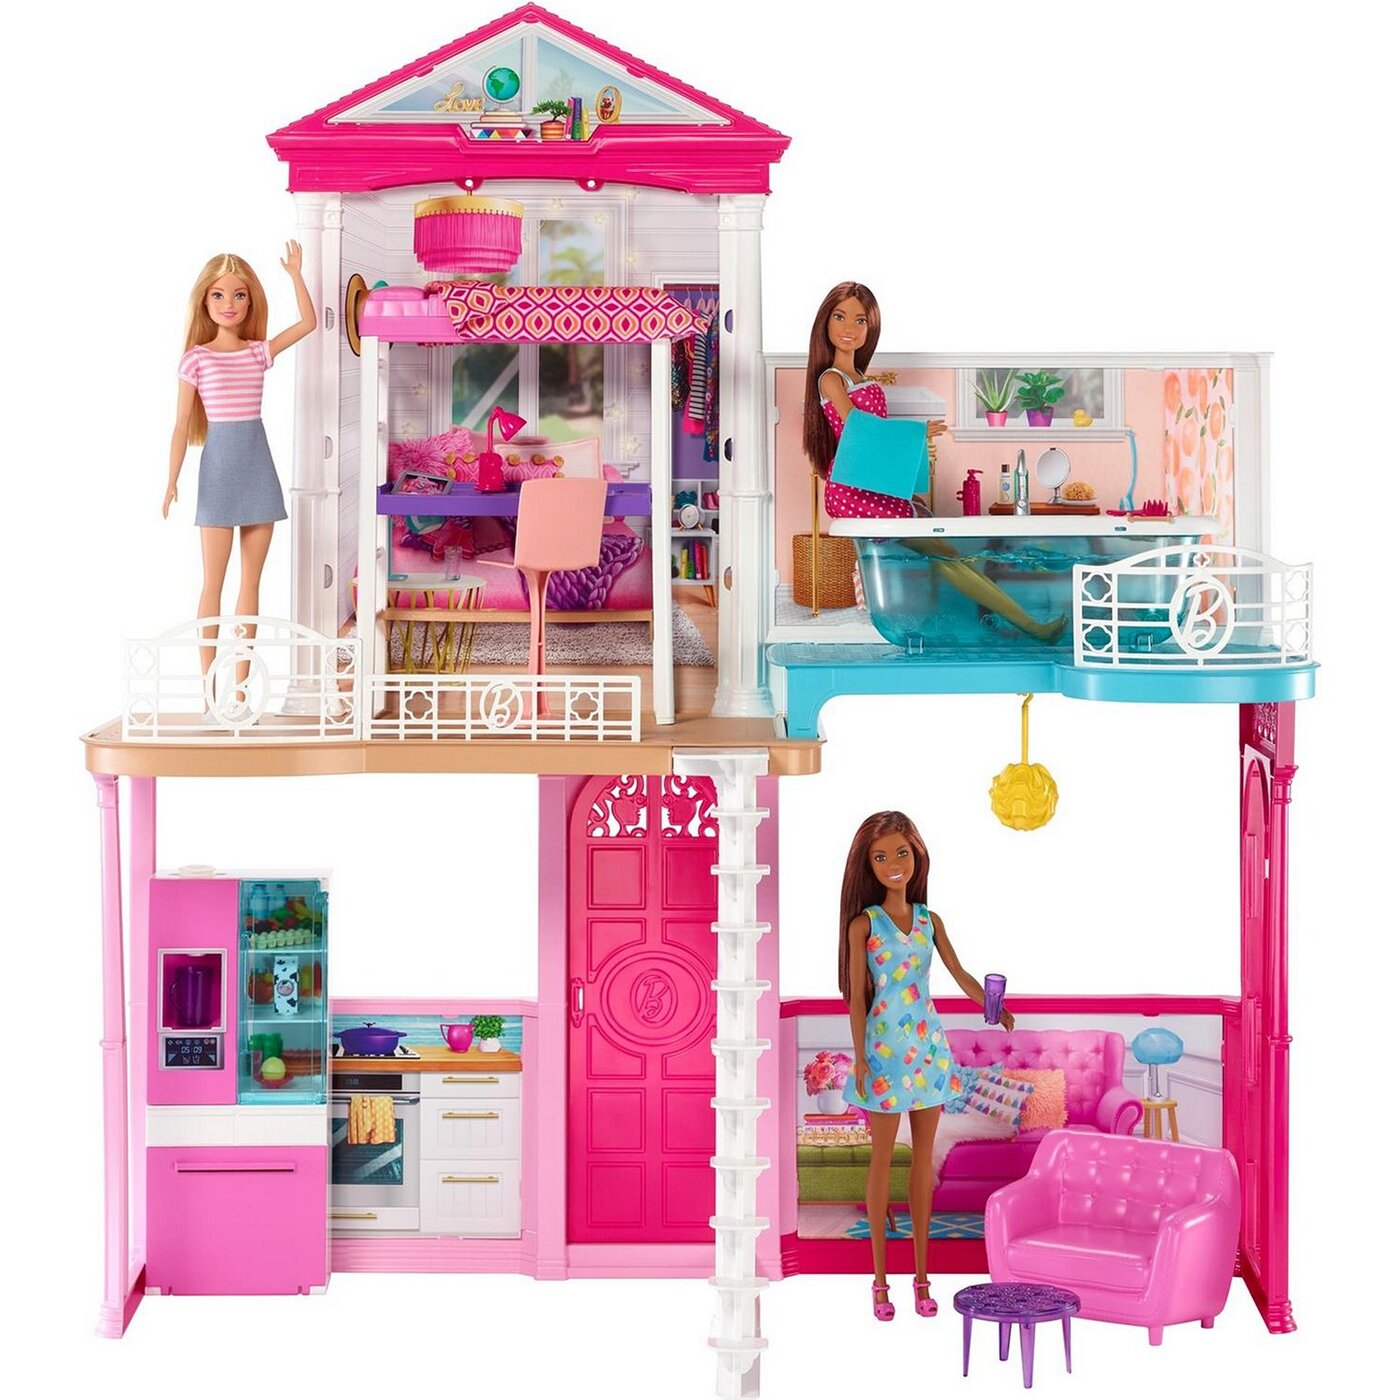 Набор игровой Barbie дом + куклы + аксессуары - характеристики, фото и отзы...